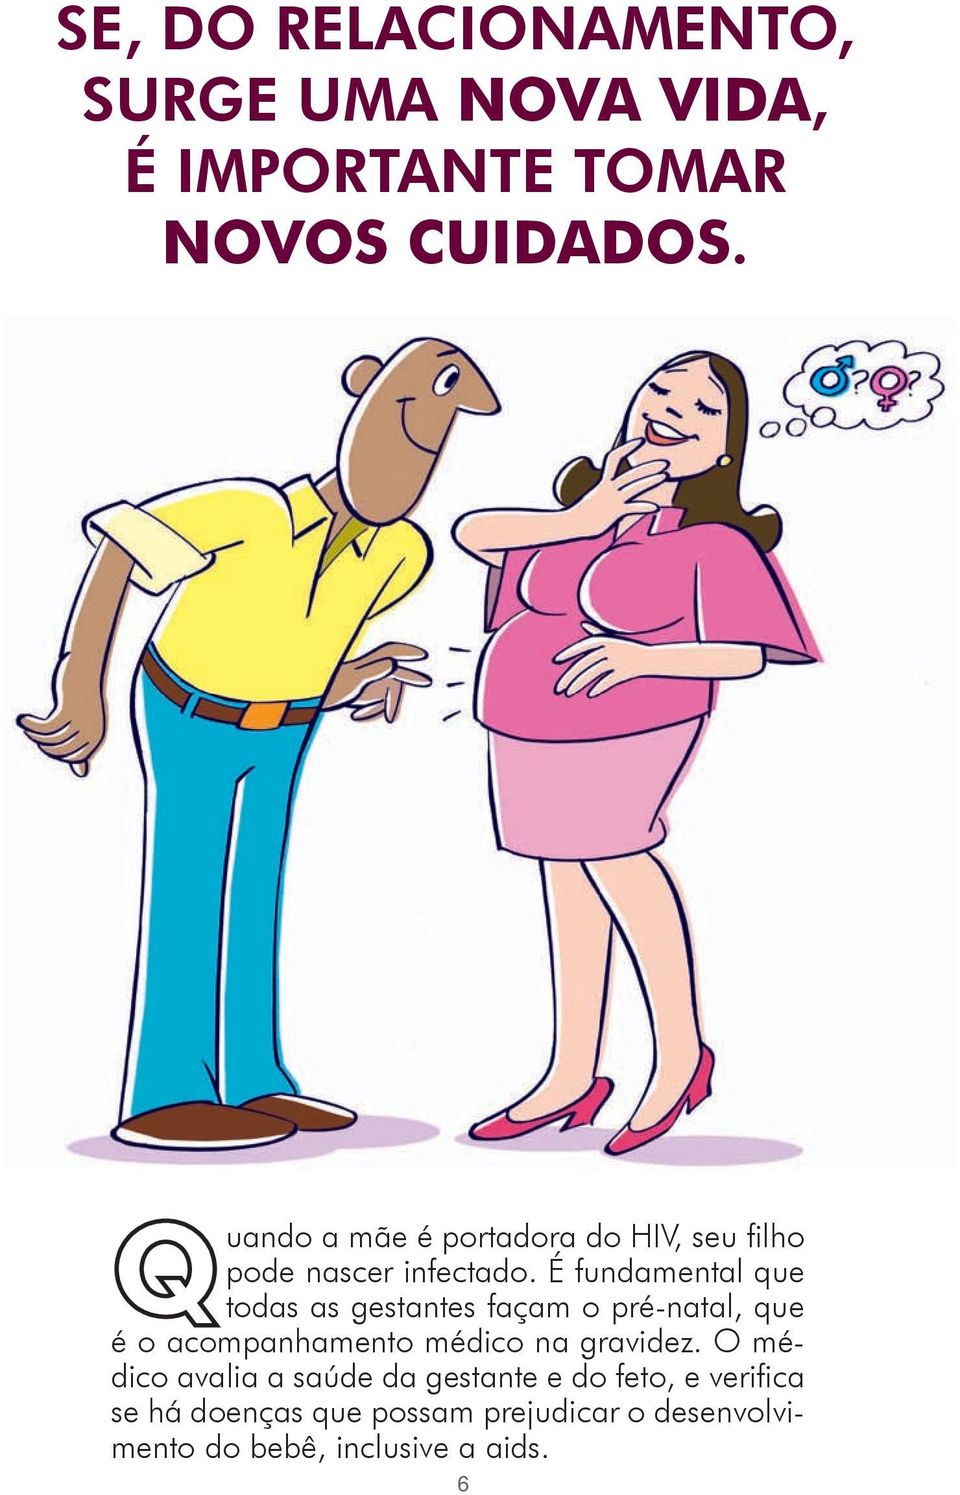 É fundamental que todas as gestantes façam o pré-natal, que é o acompanhamento médico na